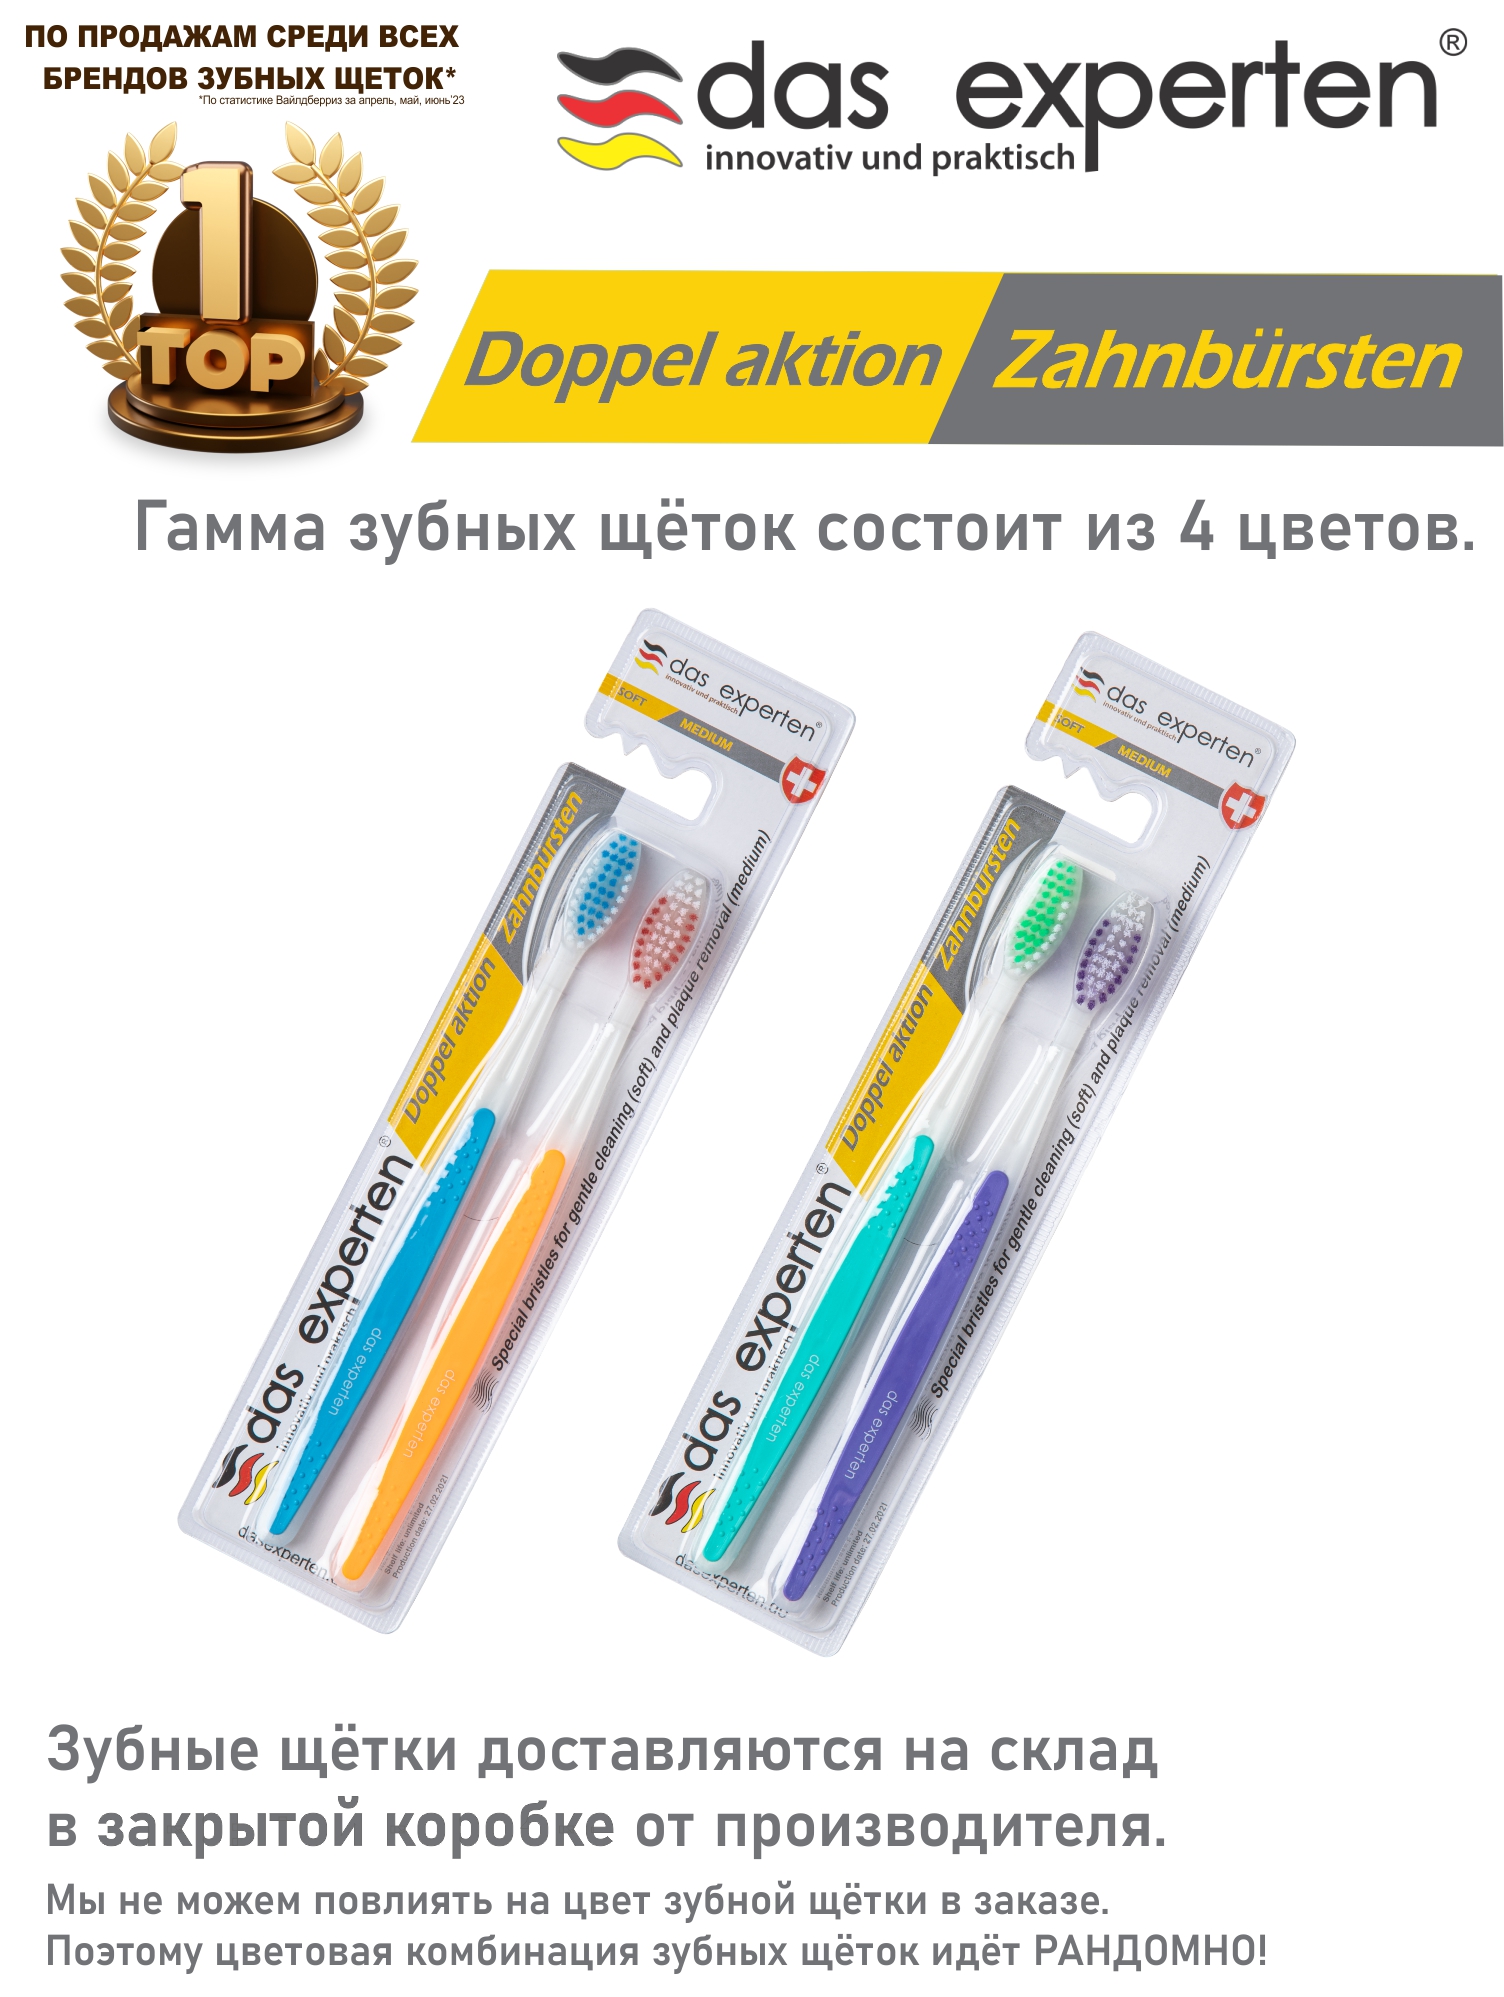 Зубные щетки Das Experten DOPPEL AKTION 2 зубные щетки одноразовые с зубной пастой 100 шт уп